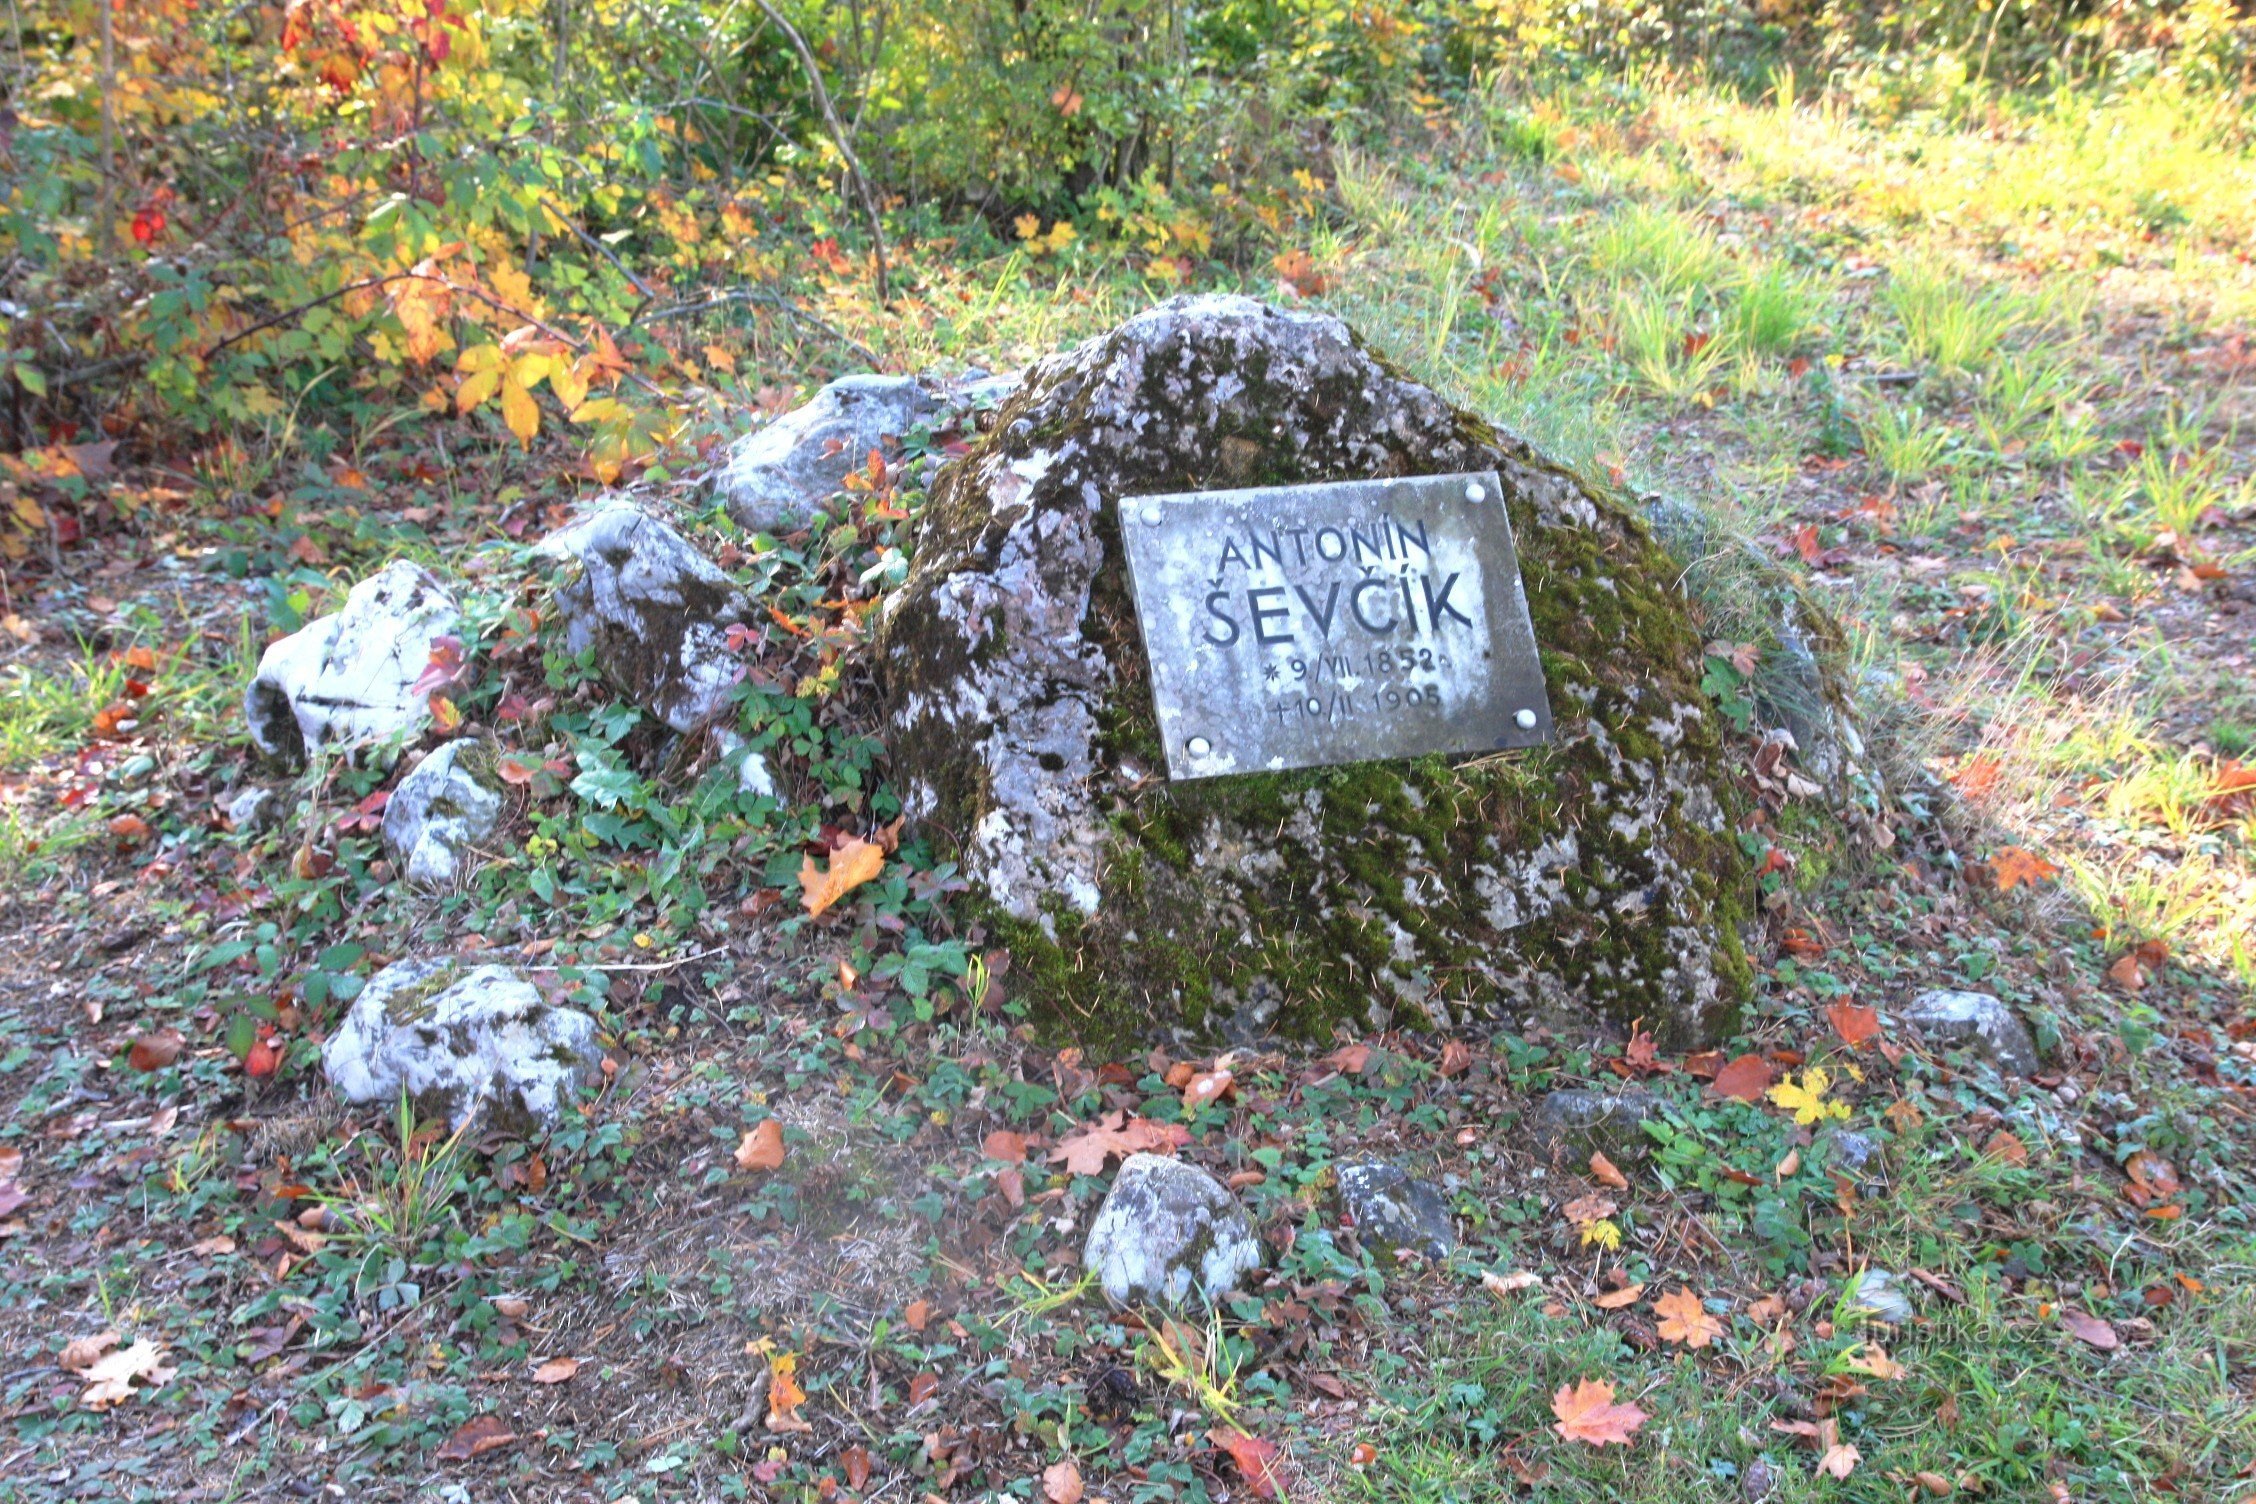 Schattovo putovanje počinje kod spomenika A. Ševčíku